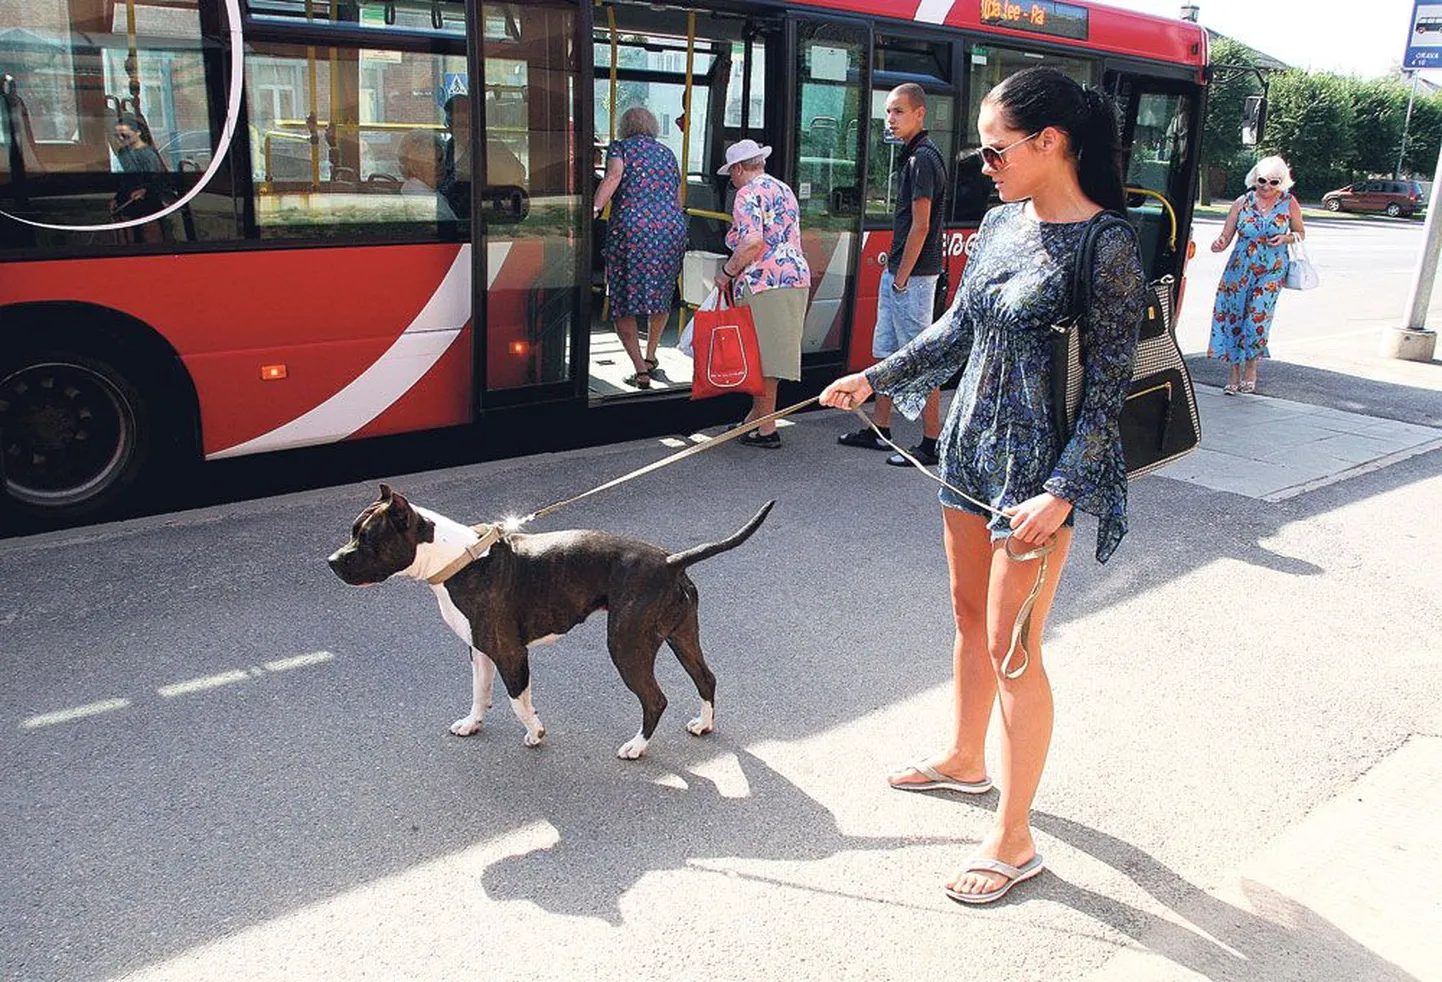 Hanna Kolpakova jäi pika ninaga, kui tahtis oma suukorvistatud koera Tartu linnaliinibussi kaasa võtta, sest bussijuht ei lubanud. Bussifirma Sebe leiab, et juht käitus korrektselt.